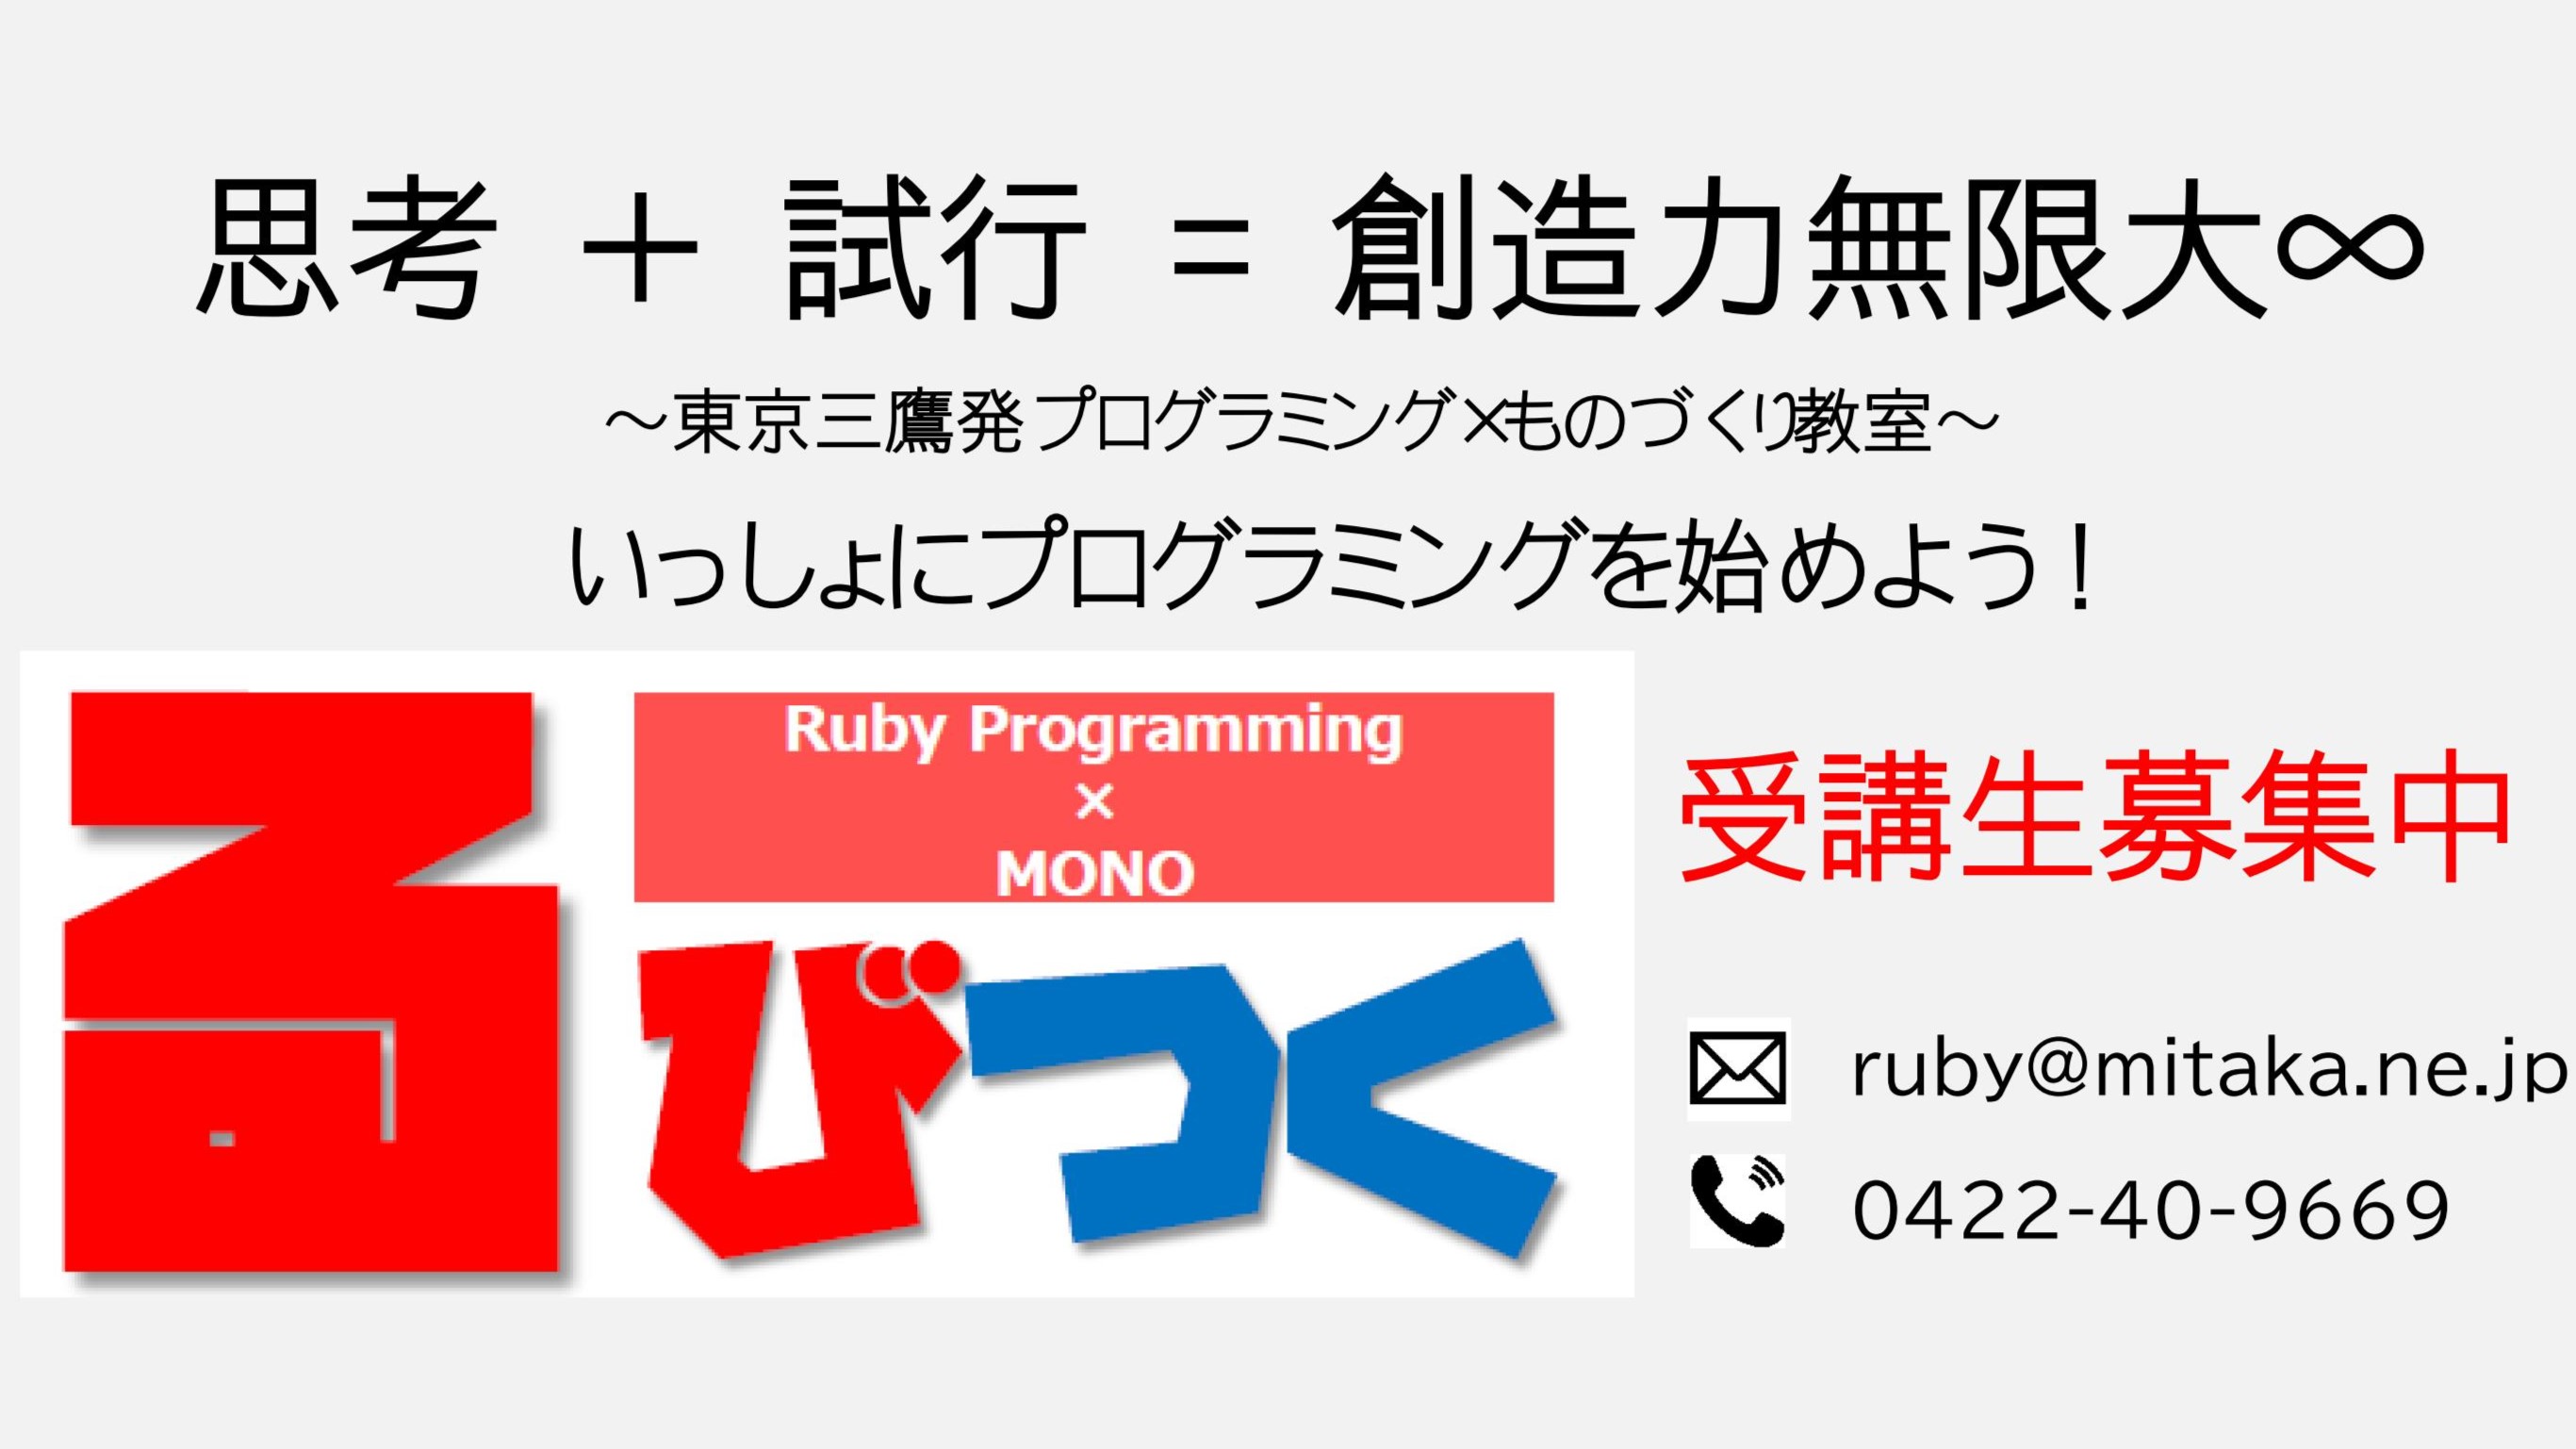 東京三鷹にあるプログラミング教室るびつくは、ものづくりを楽しみながらプログラミングを学べる教室です。新しい受講生を募集しています。一緒にプログラミングを始めてみましょう！